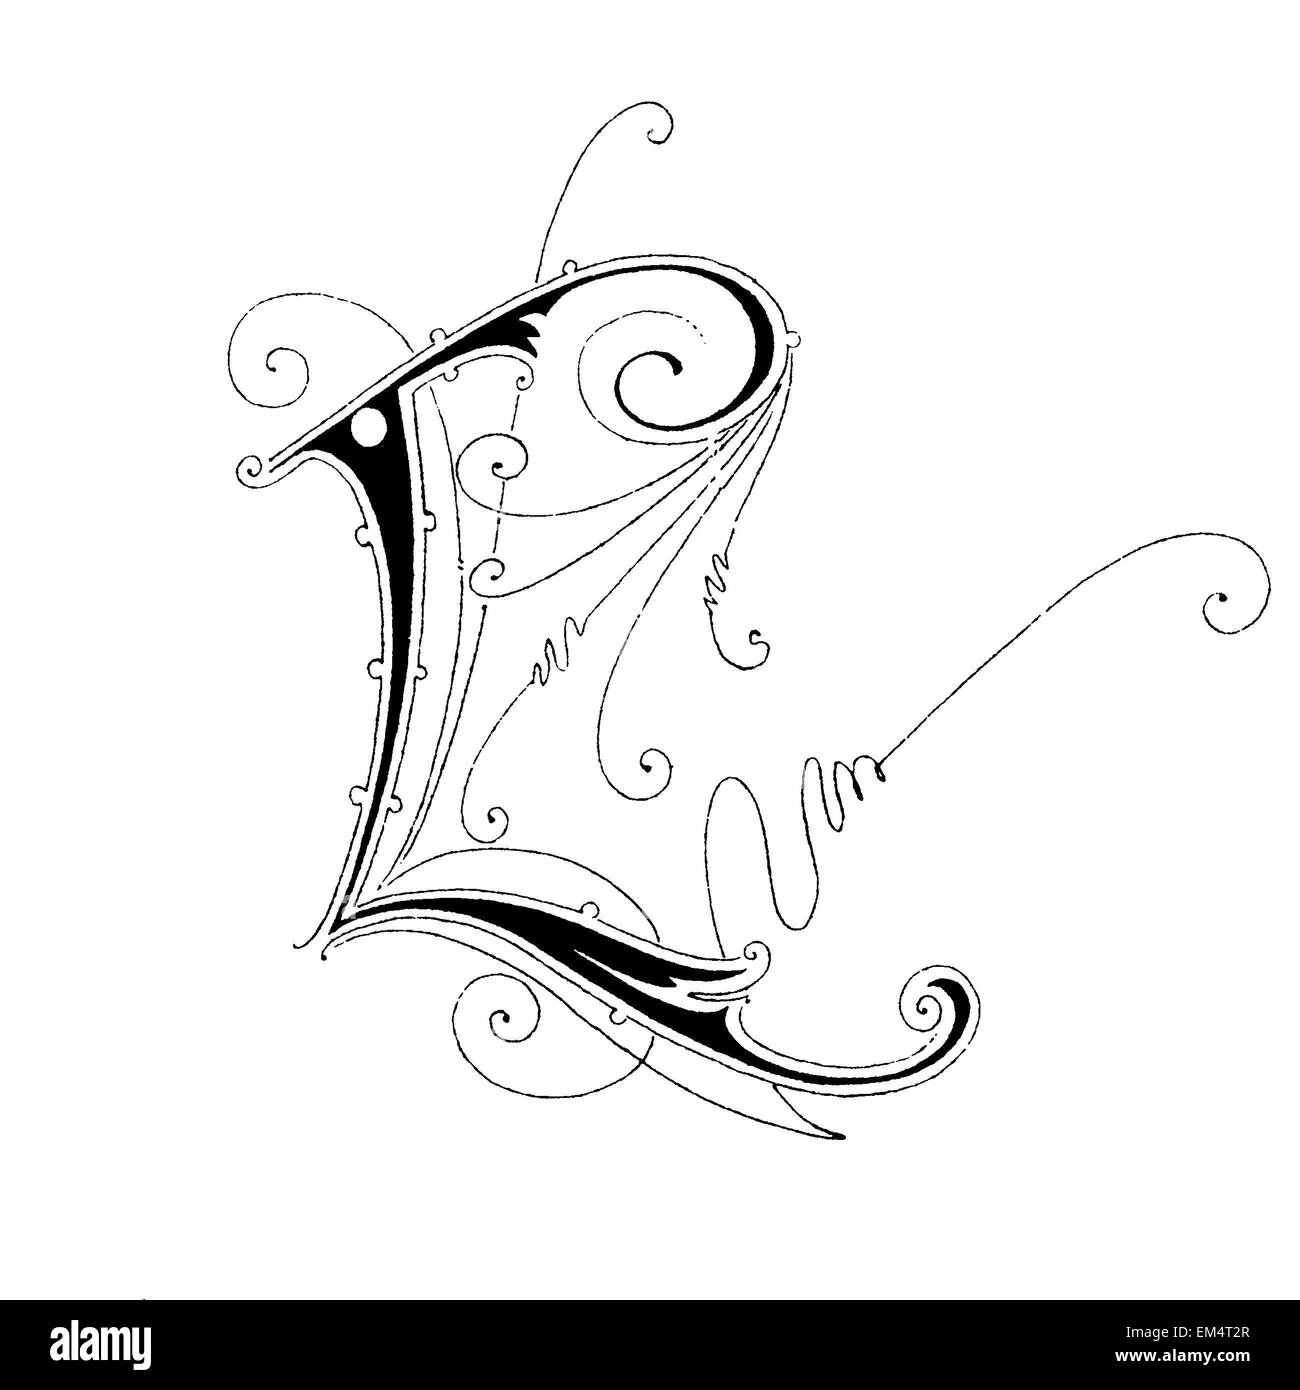 Letter L, font: Art Nouveau Stock Photo